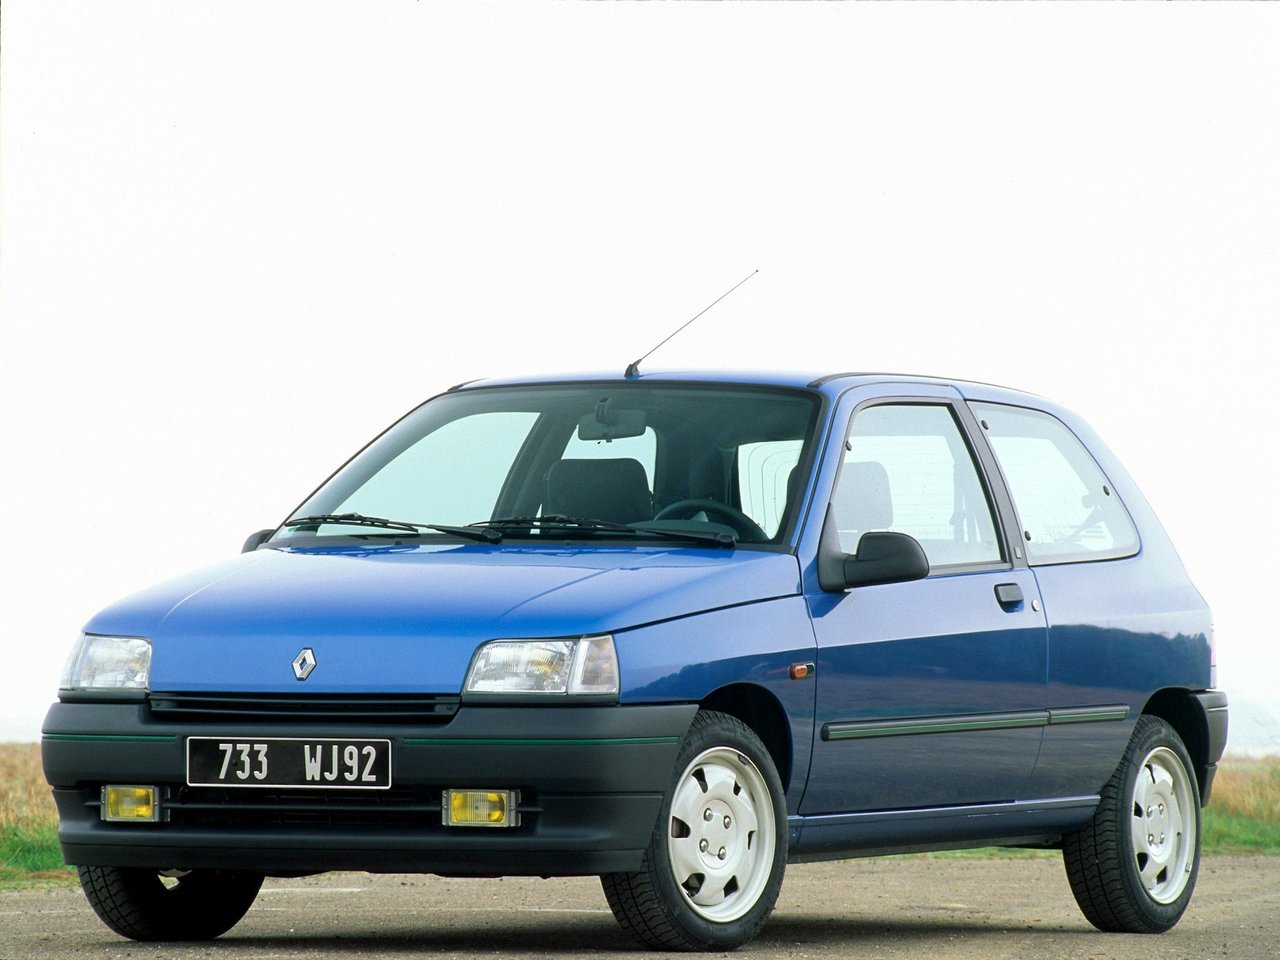 Расход газа шести комплектаций хэтчбека три двери Renault Clio. Разница стоимости заправки газом и бензином. Автономный пробег до и после установки ГБО.